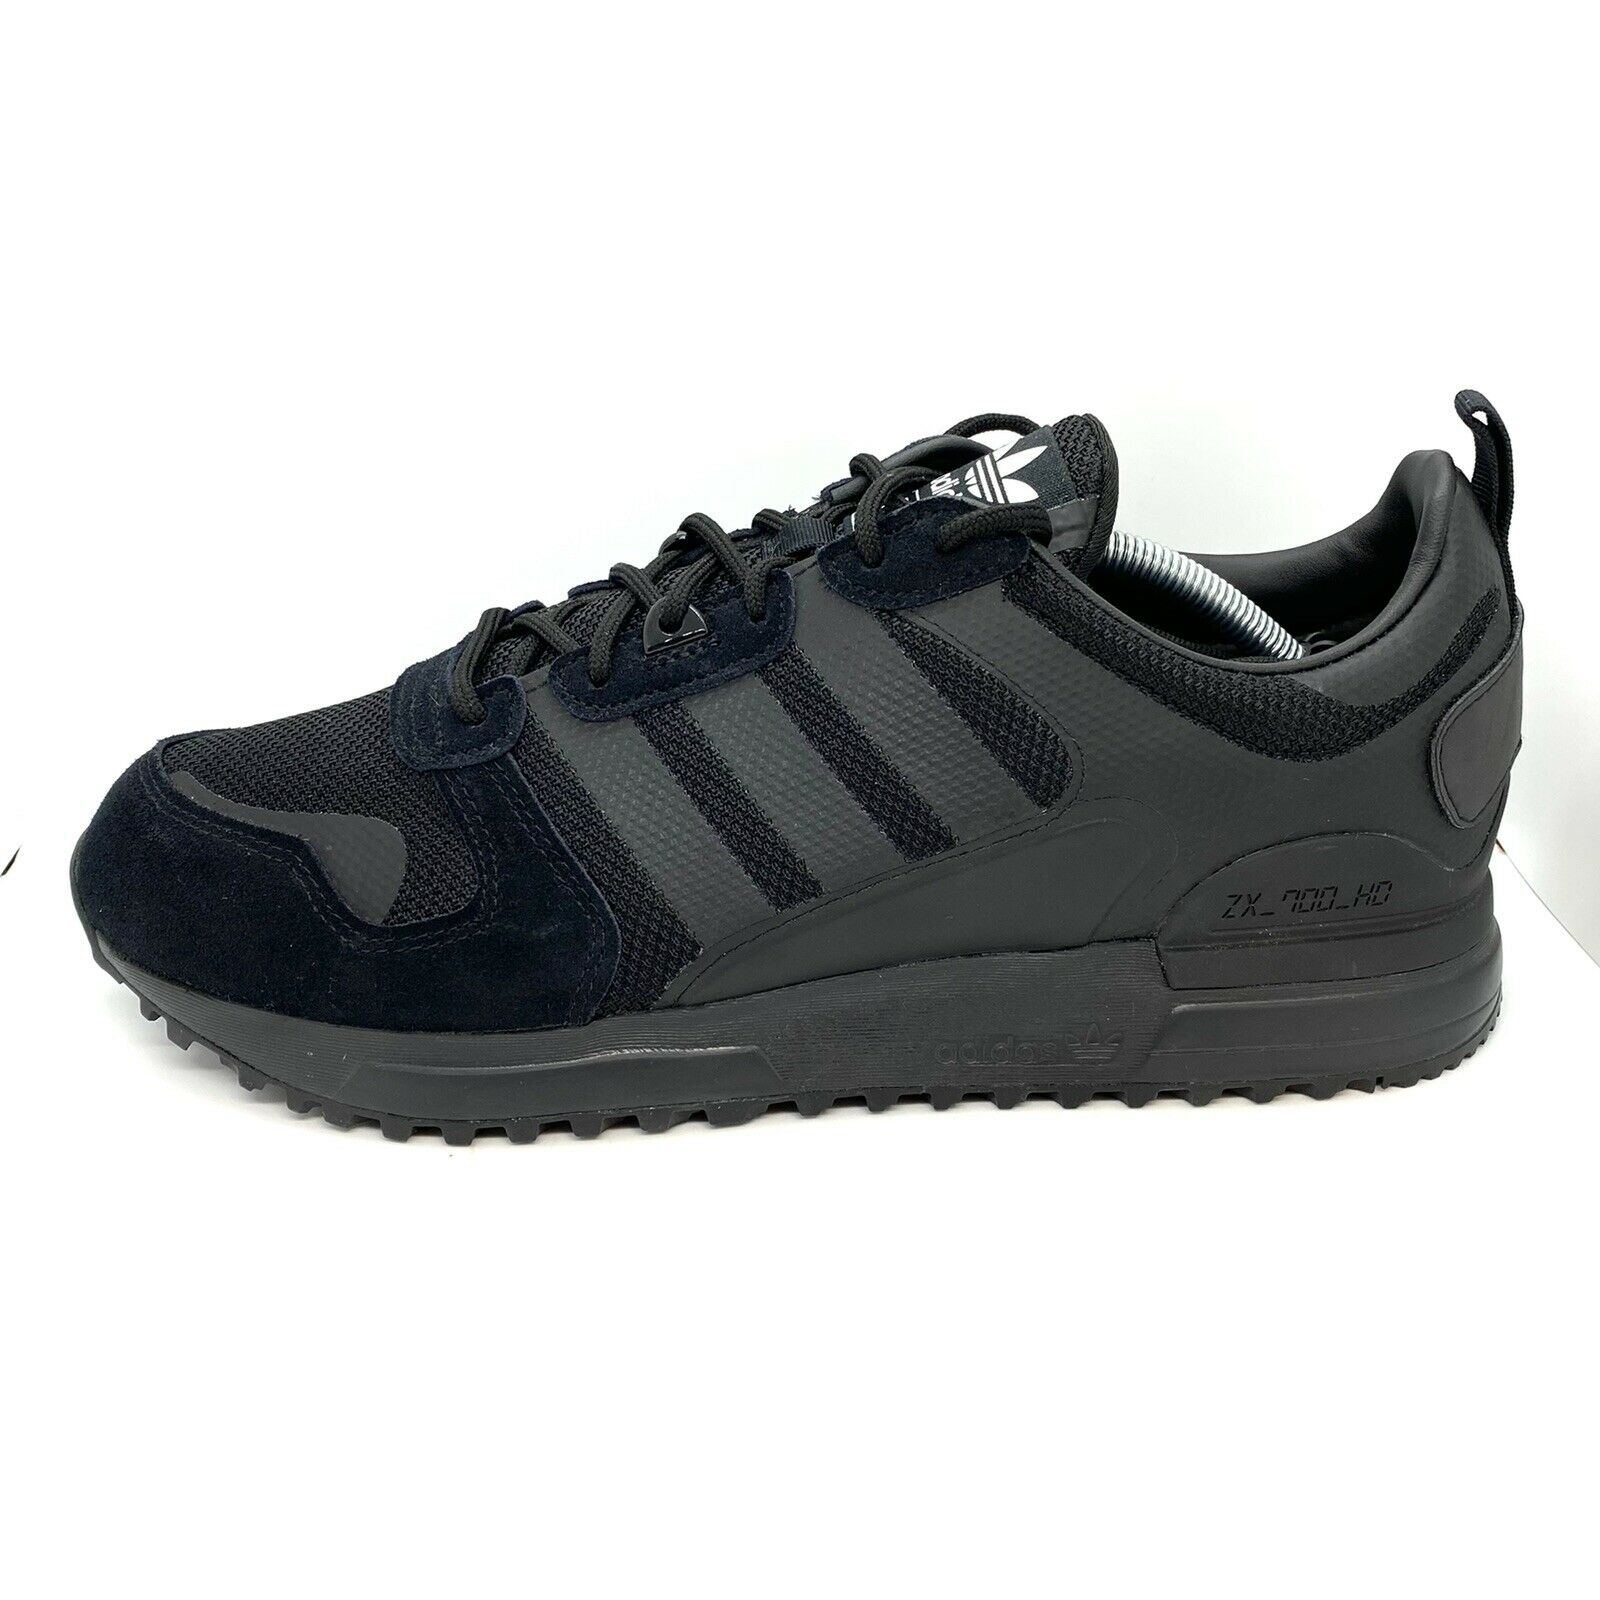 Adidas Zx 700 HD Triple Black Outdoor Walking Shoes Sneakers G55780 Men’s Sz 12